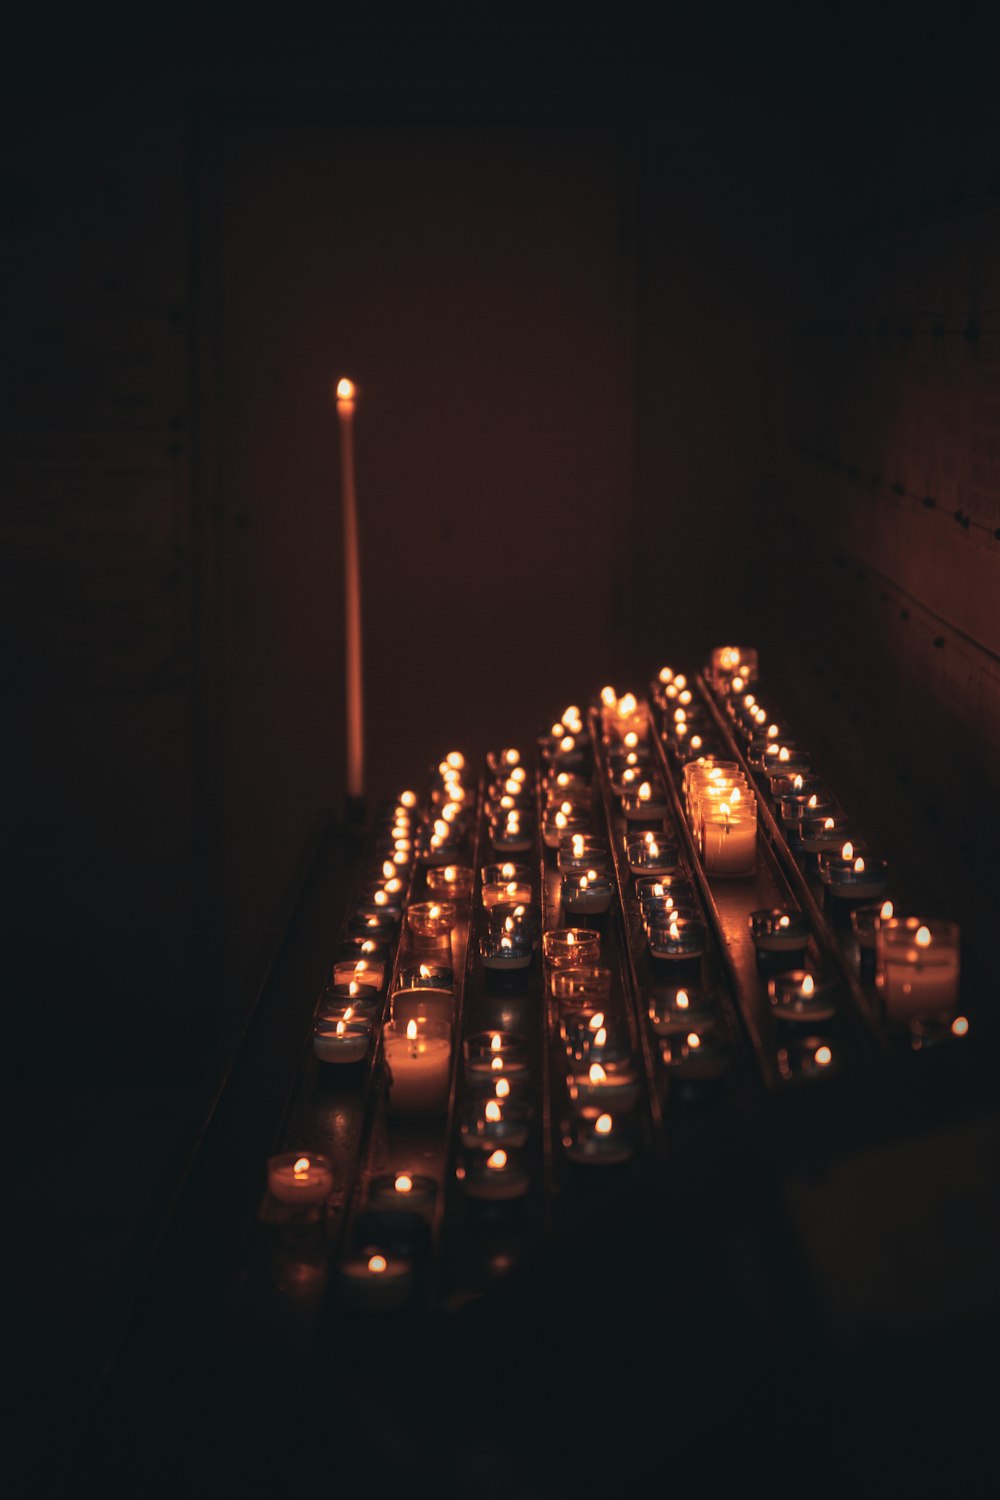 velas encendidas en la oscuridad